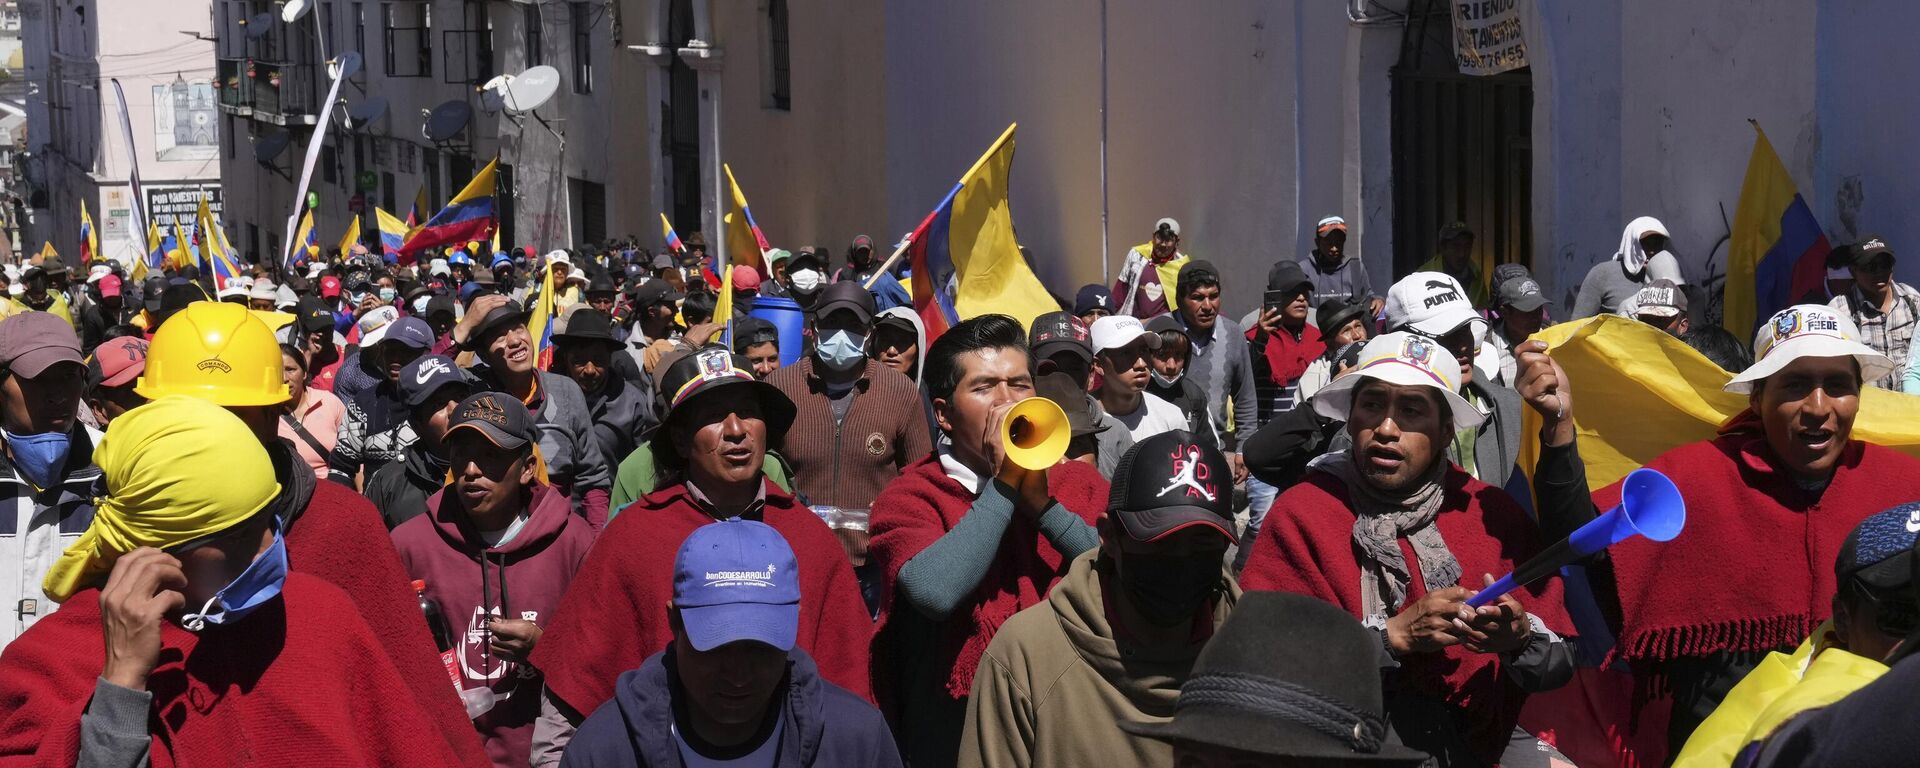 Protestas de los pueblos indígenas en Ecuador en el verano de 2022 (archivo) - Sputnik Mundo, 1920, 24.01.2023